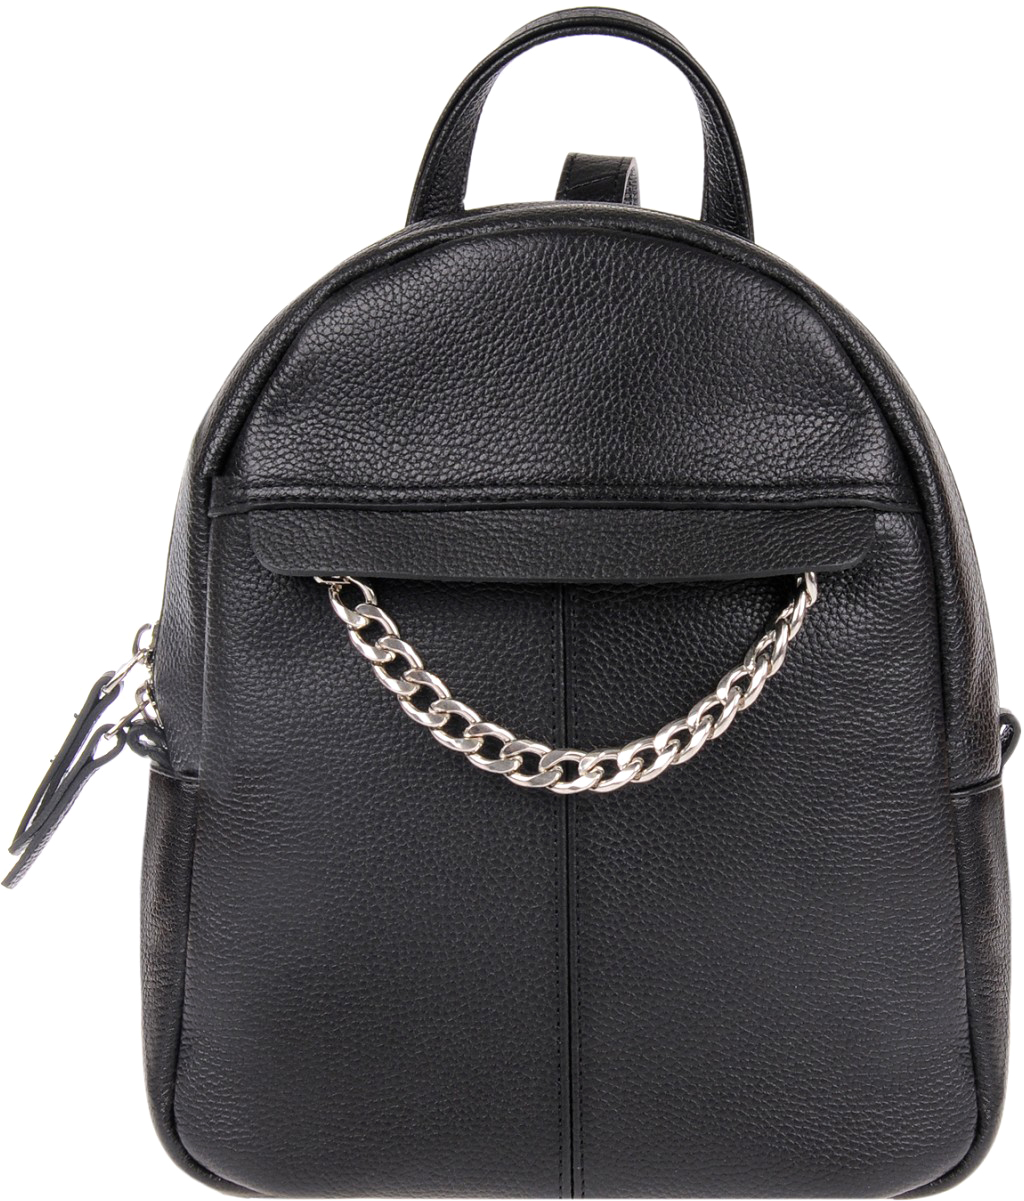 Сумка-рюкзак женская Franchesco Mariscotti, цвет: черный. 1-3991к пл